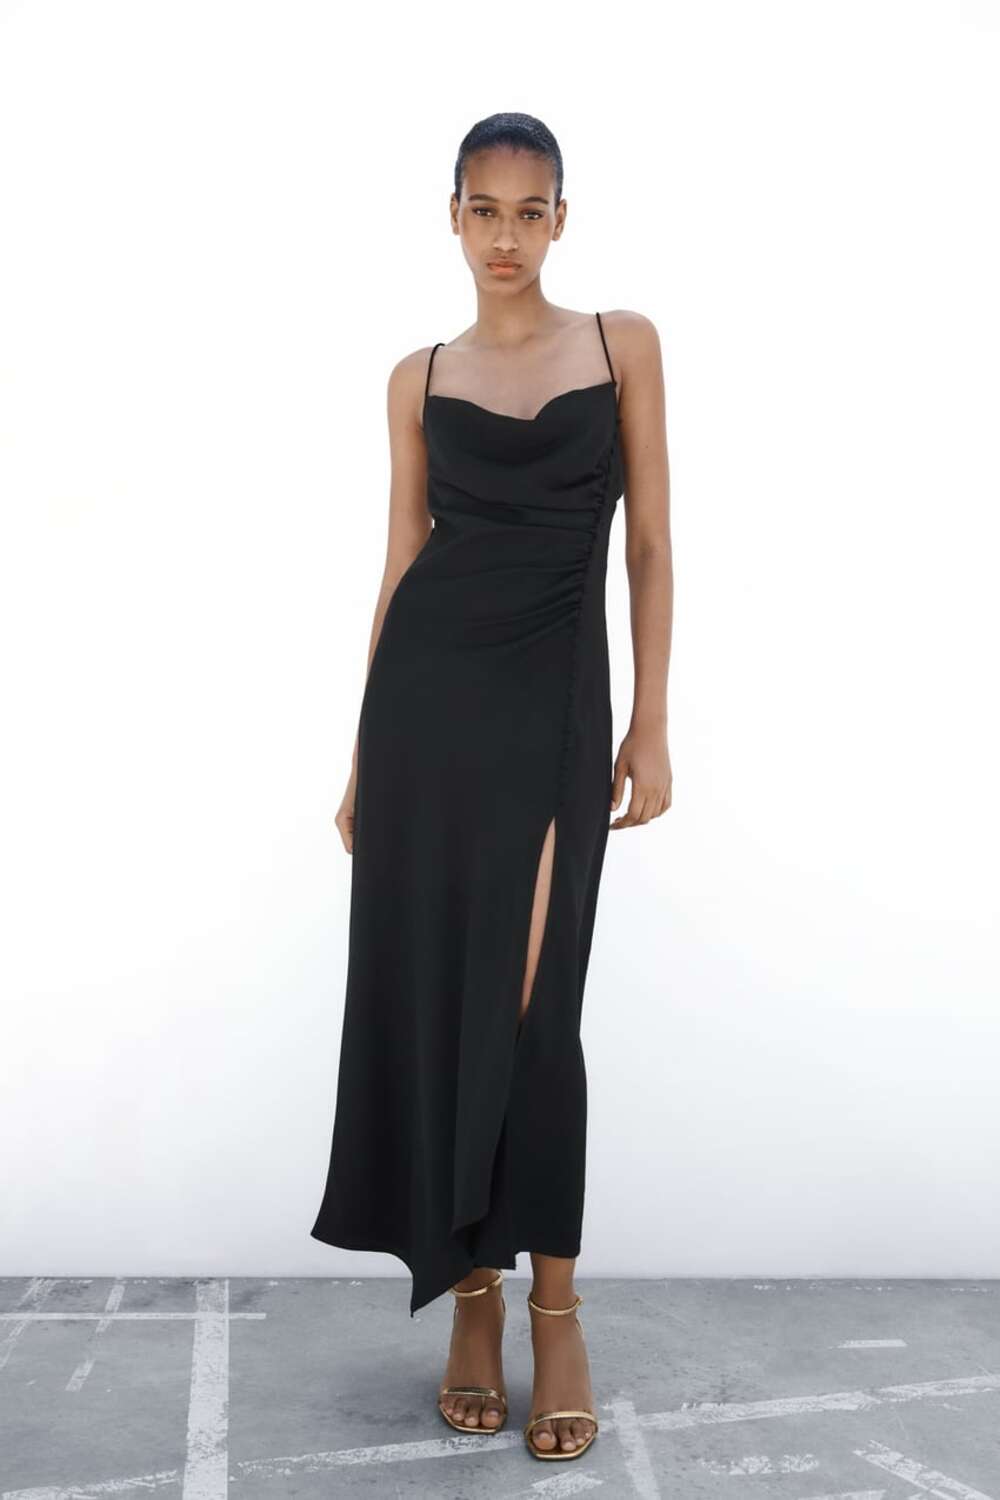 Crna satenska haljina Trend tihog luksuza sve više raste, a Zara ima idealne komade za to